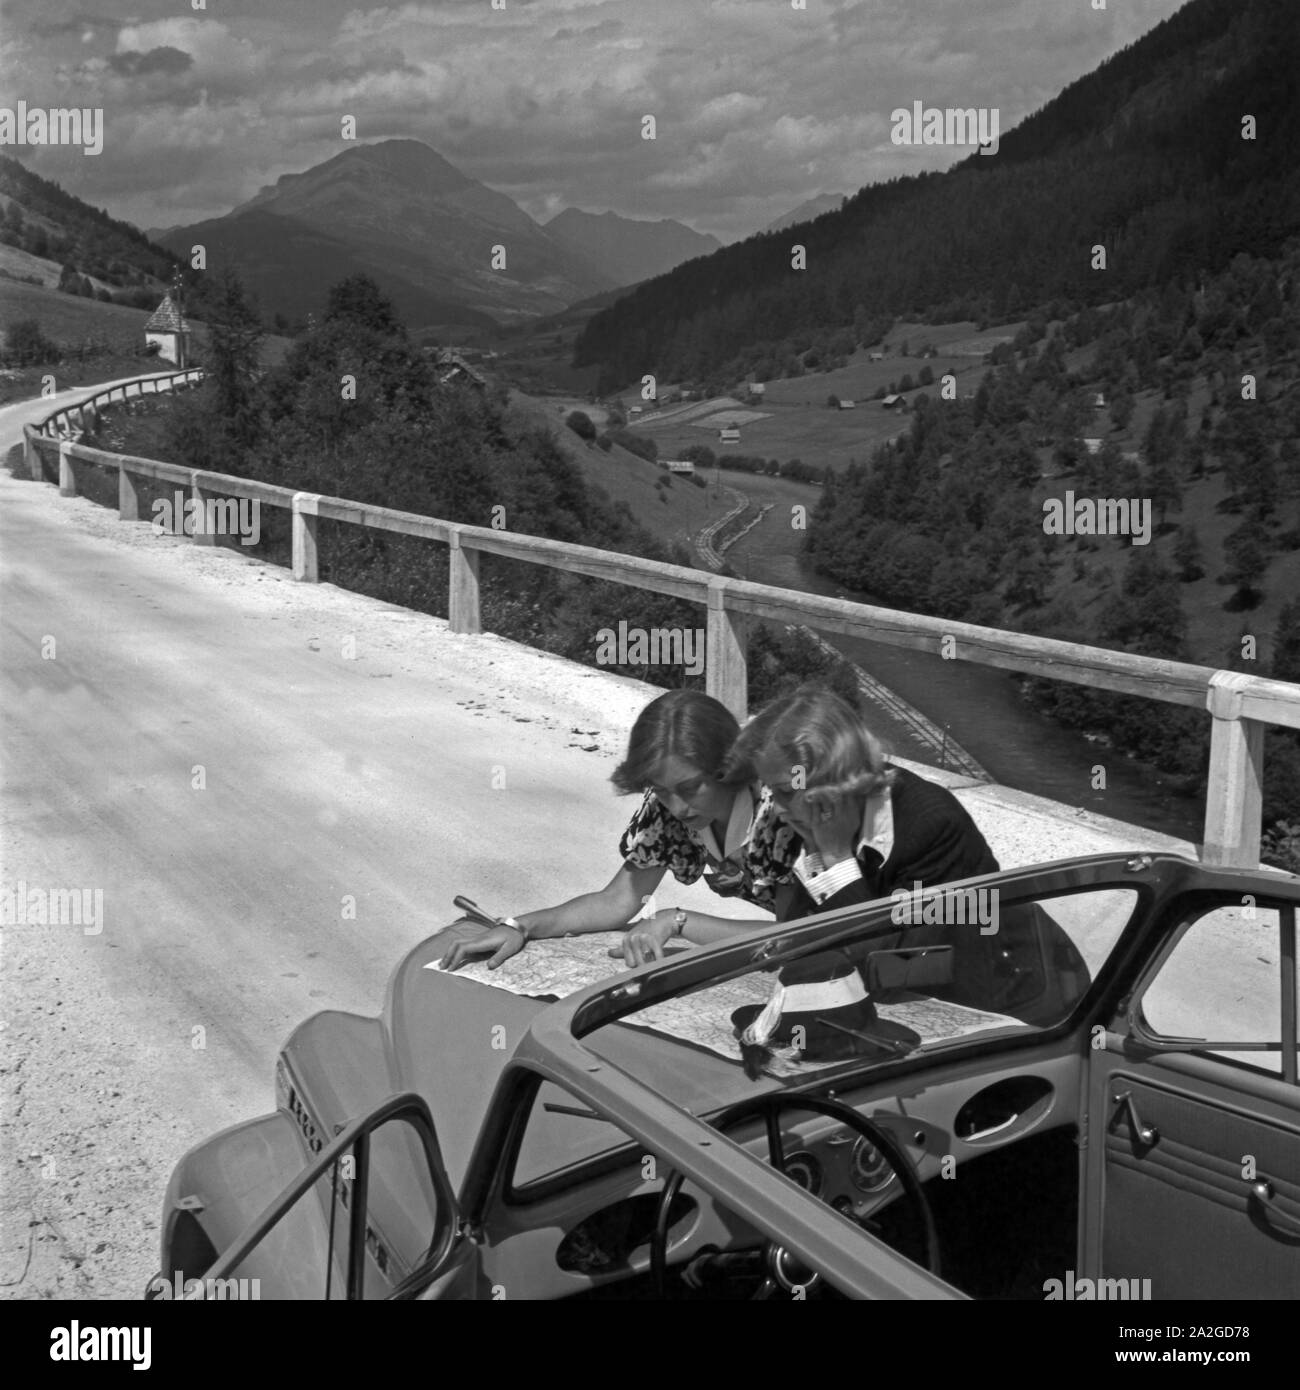 Mit dem Auto unterwegs durch Österreich: zwei Frauen studieren die Karte, 1930er Jahre. Travelling through Austria by car: two women studying the road map, 1930s. Stock Photo